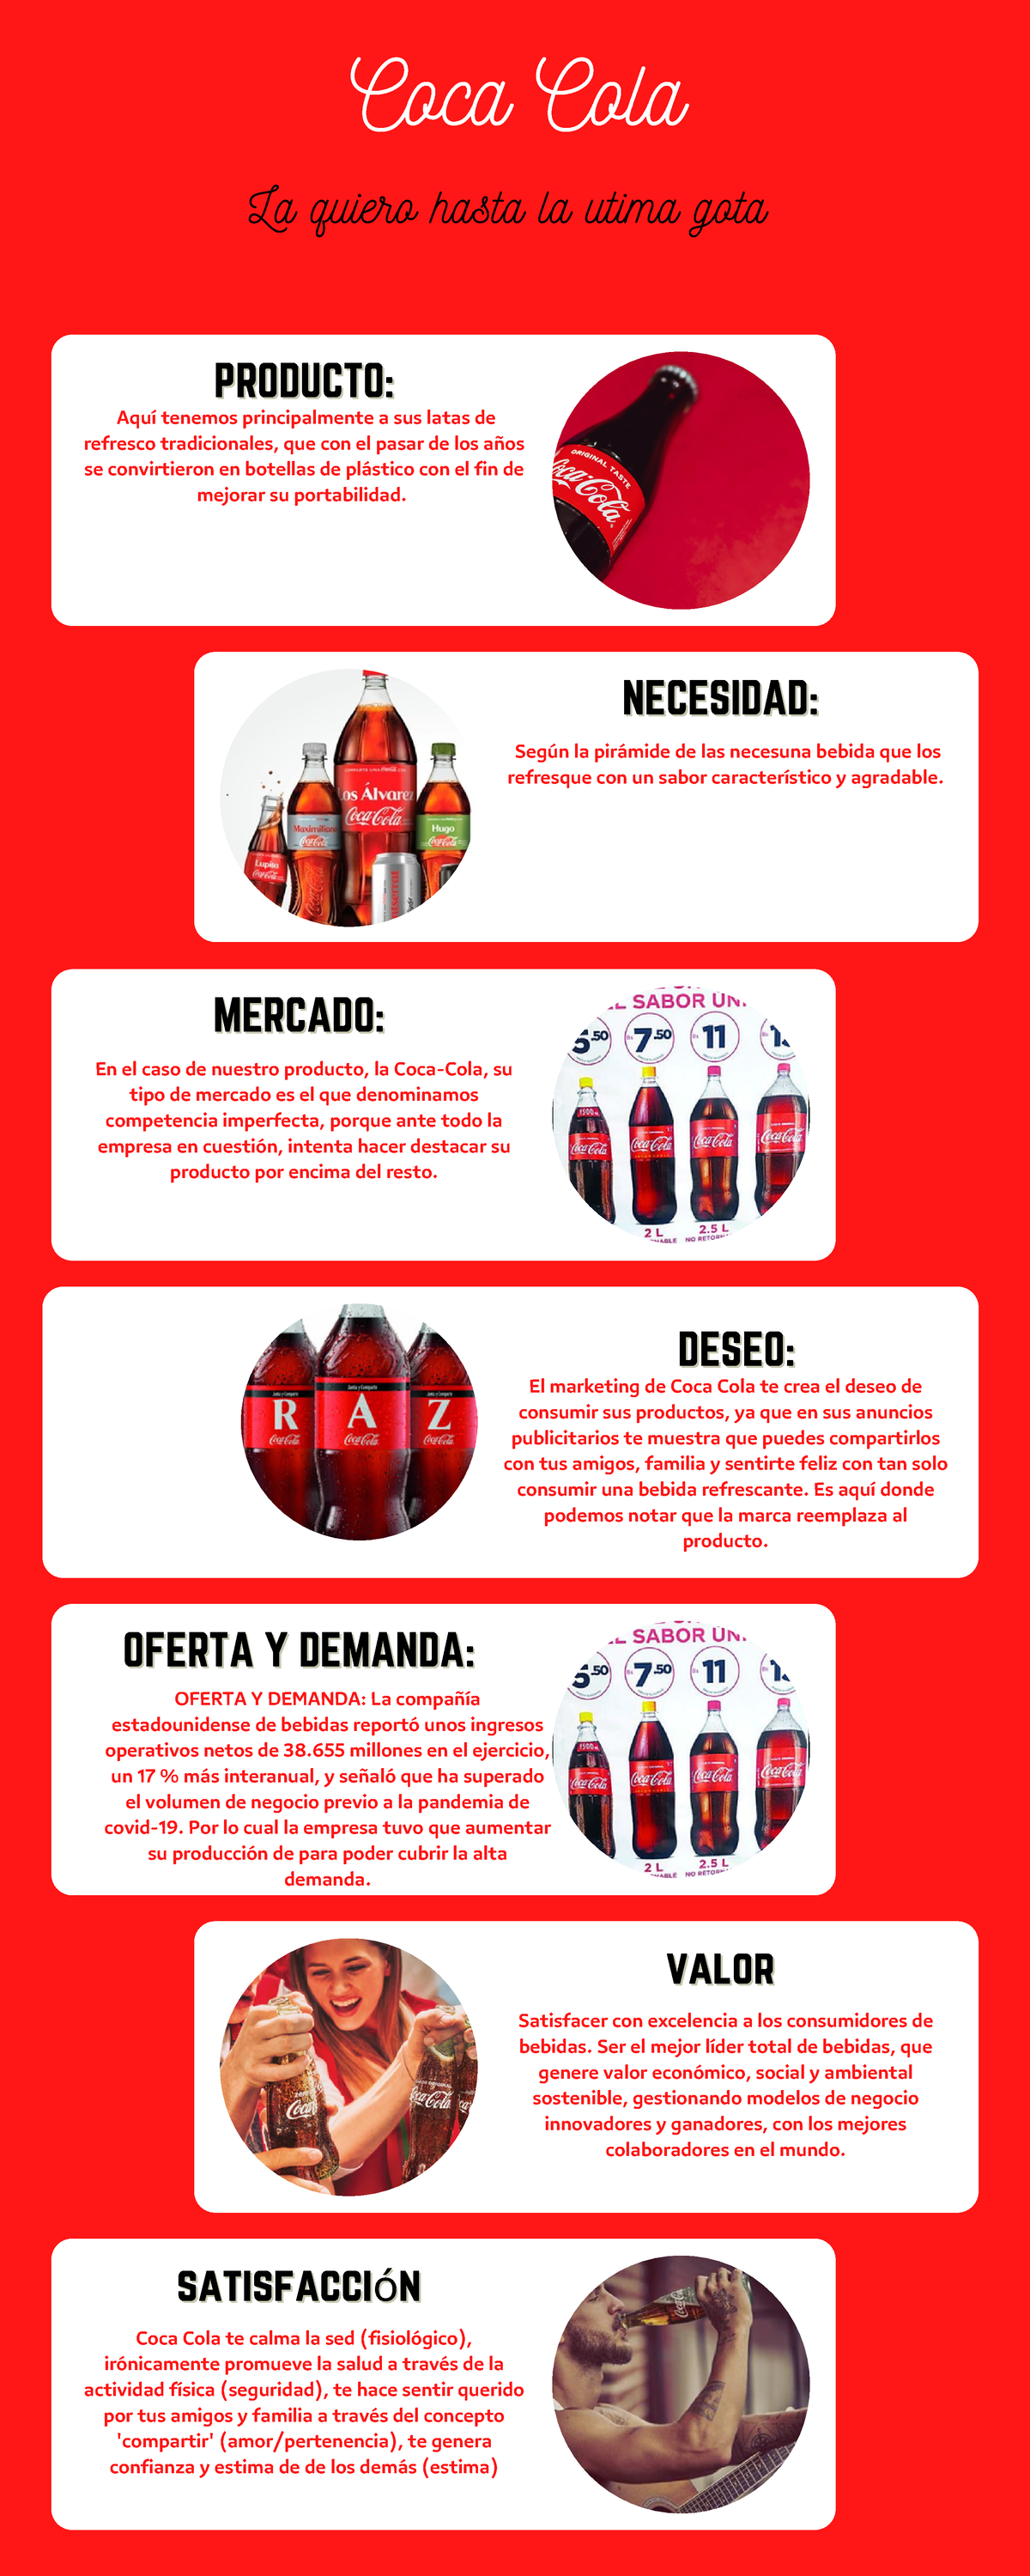 Coca Cola - TAREA DE 4TO CICLO DE MARKETING, TRABAJO DE LAS PRIMERAS  SEMANAS, 1, 2 Y 3 - Coca Cola - Studocu